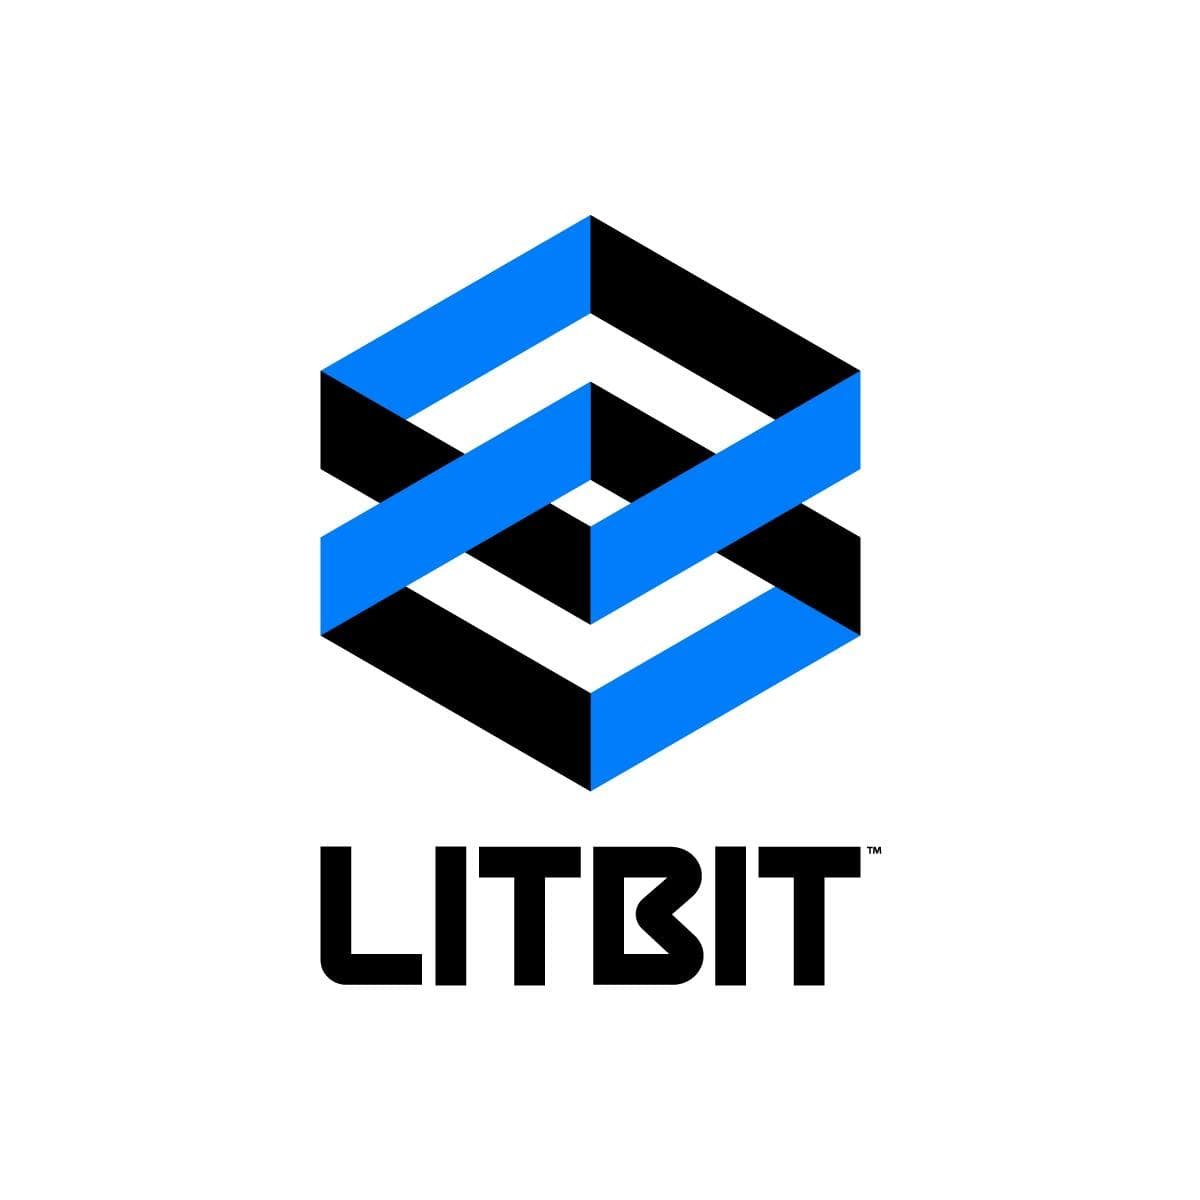 Finance LitBit